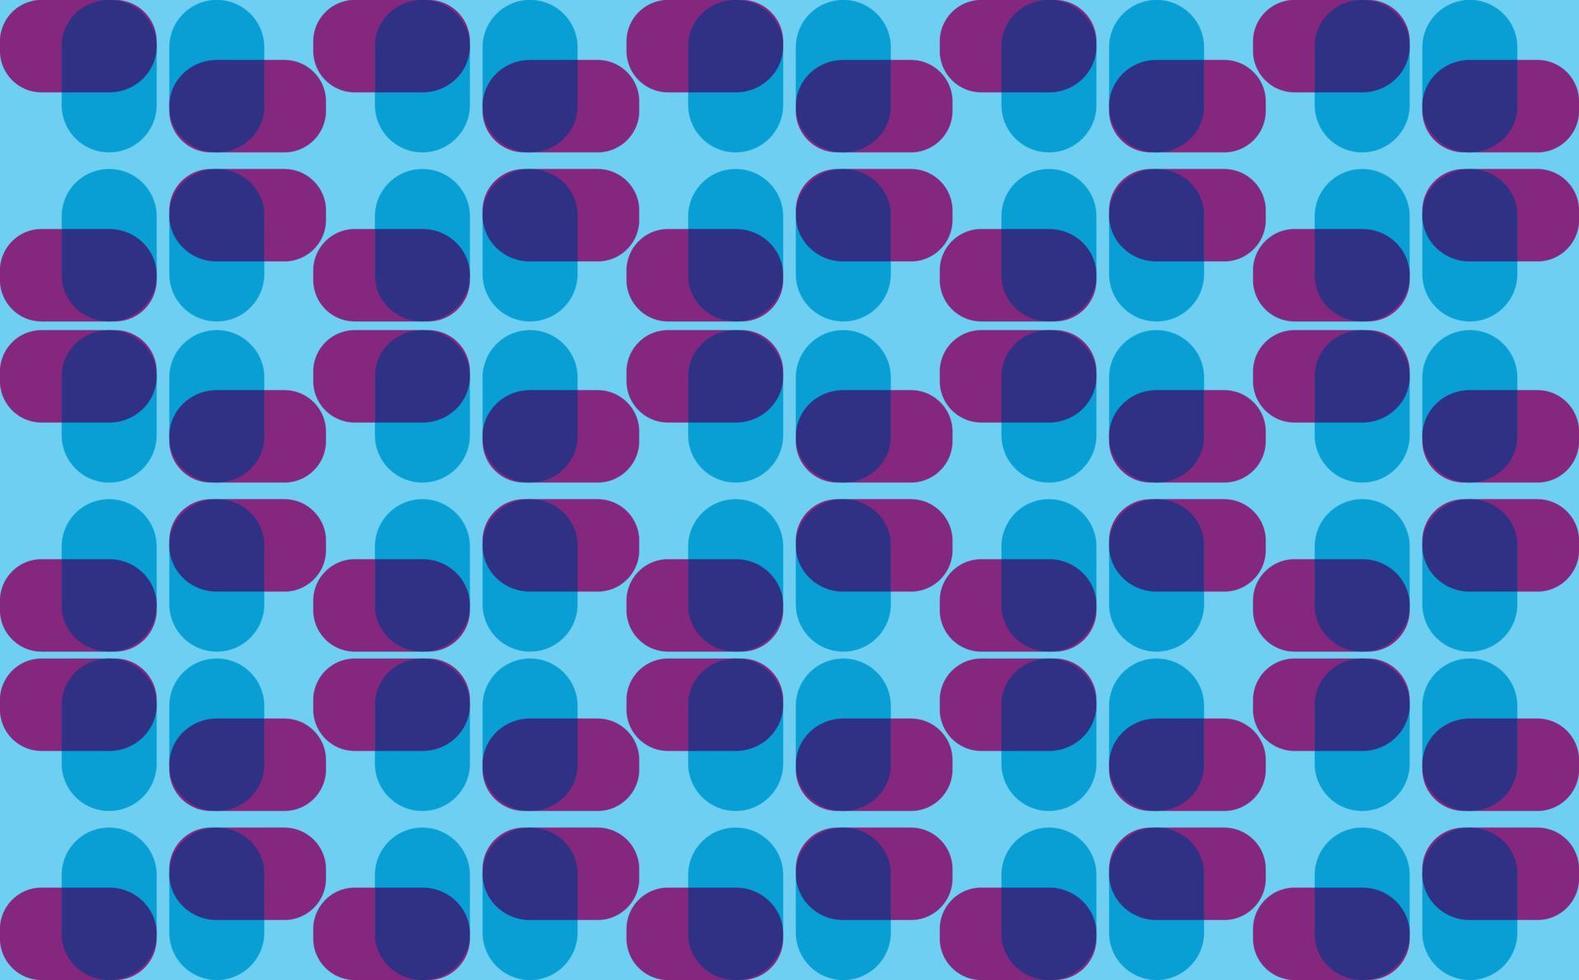 padrão de formas geométricas arredondadas sobrepostas de cor azul e roxo. fundo abstrato para papel de parede, tecido, estampas, capa, pôster, modelo e cartão. vetor